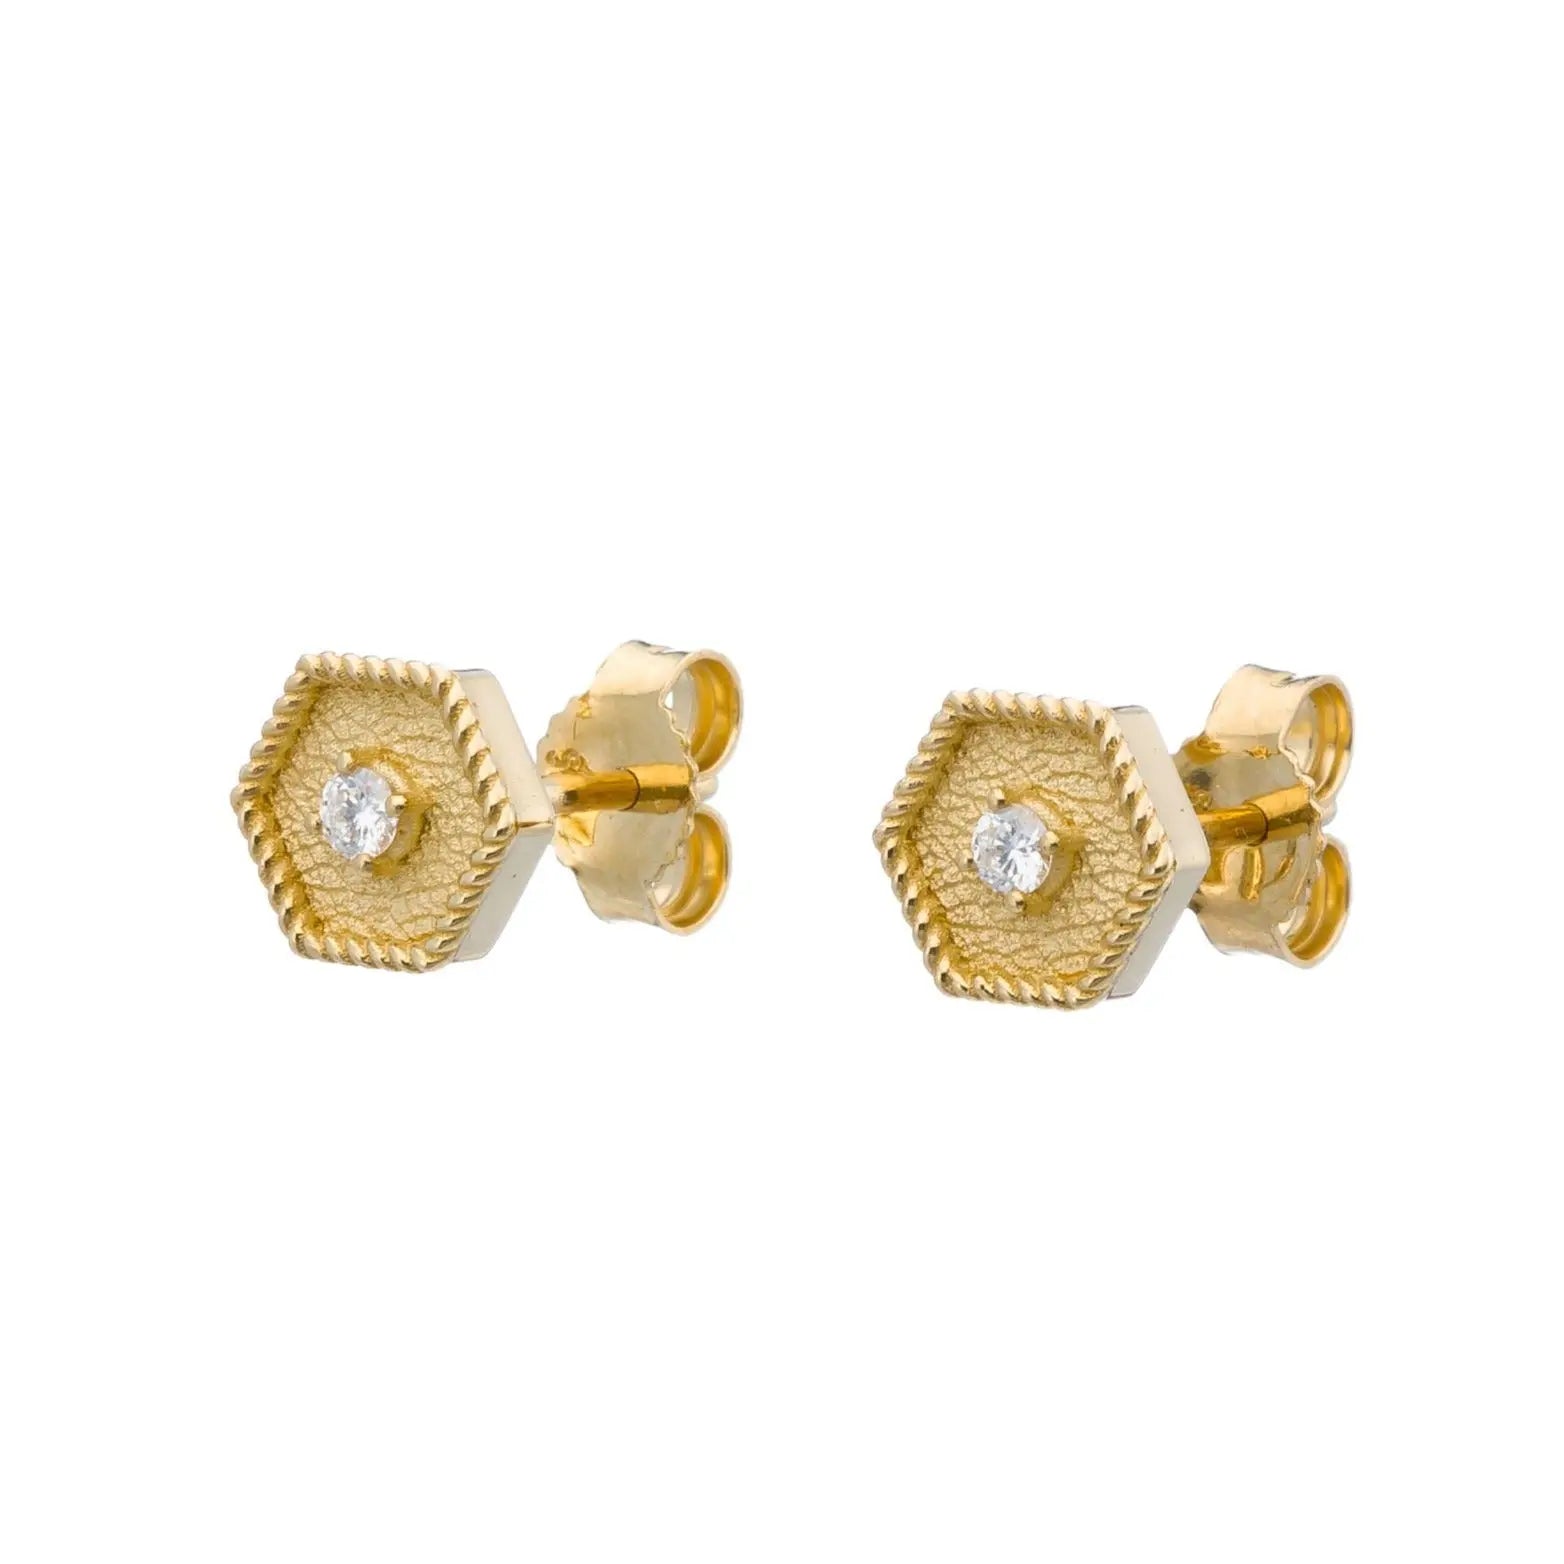 Byzantine Gold Polygon Earrings with Diamond Odysseus Jewelry